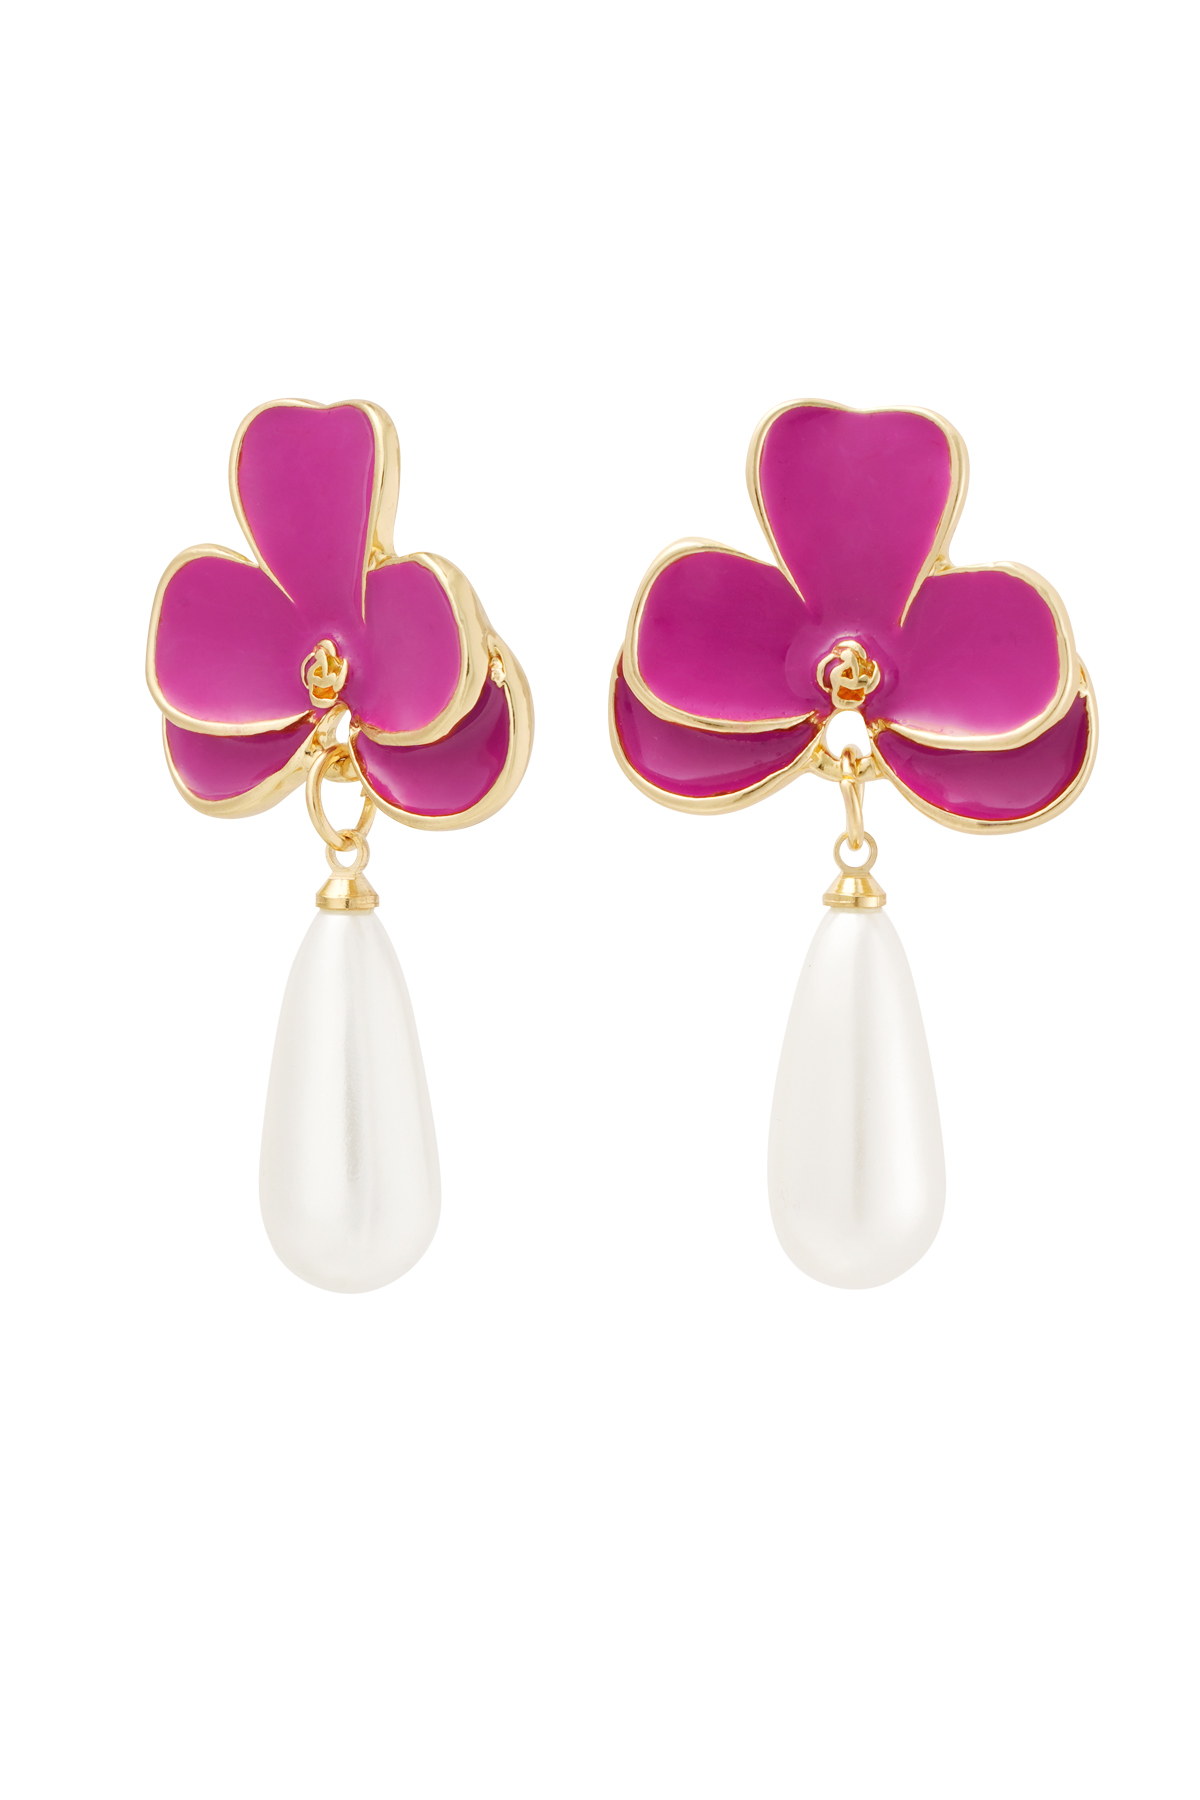 Boucles d'oreilles fleur rose avec perle - or